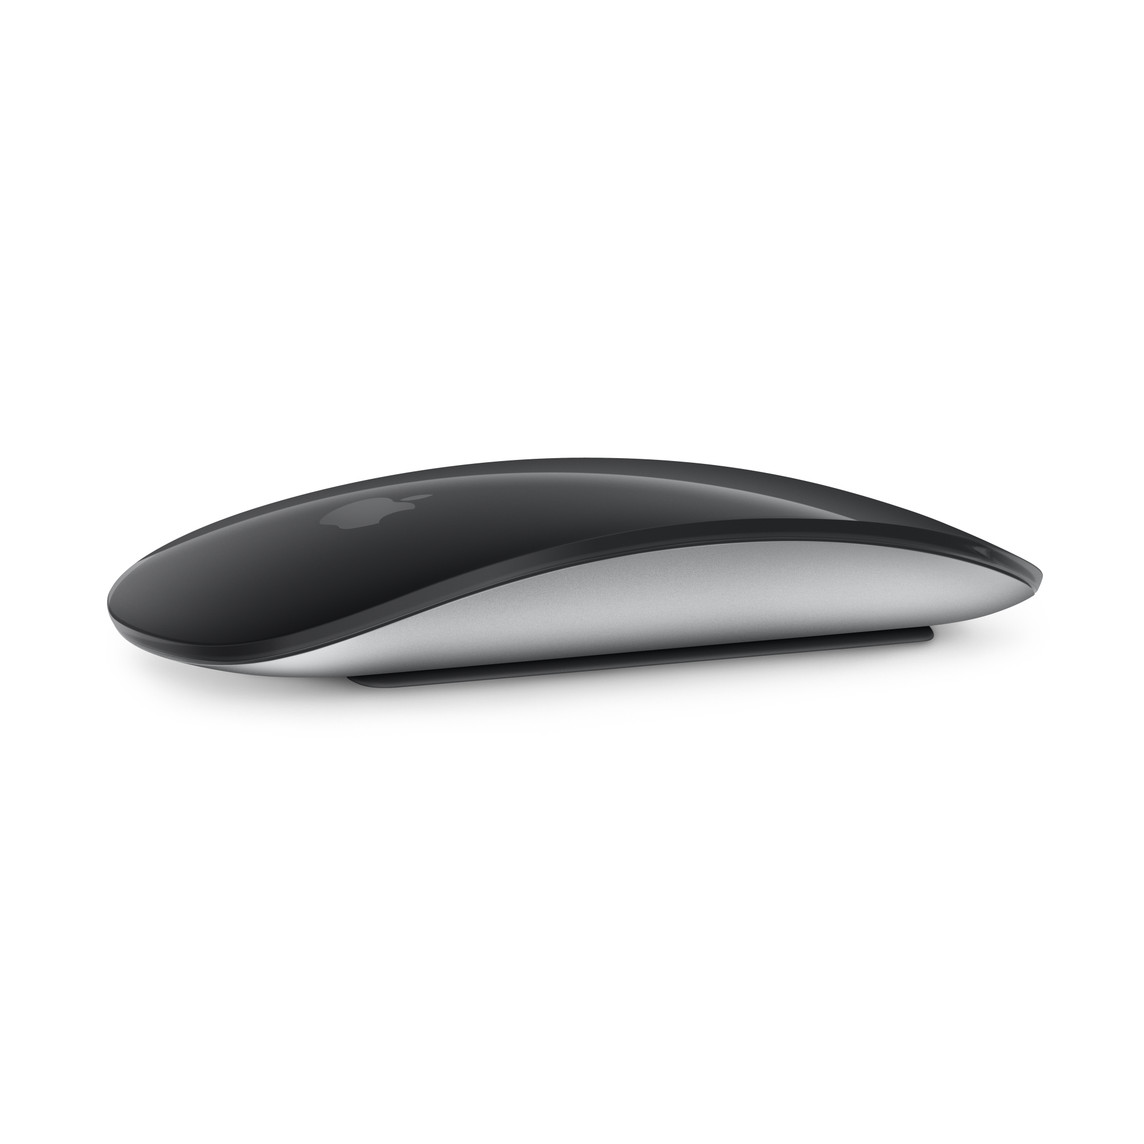 ブラックのMagic Mouse。丸みを帯びたデザインとMulti-Touchに対応している表面が見えている。
